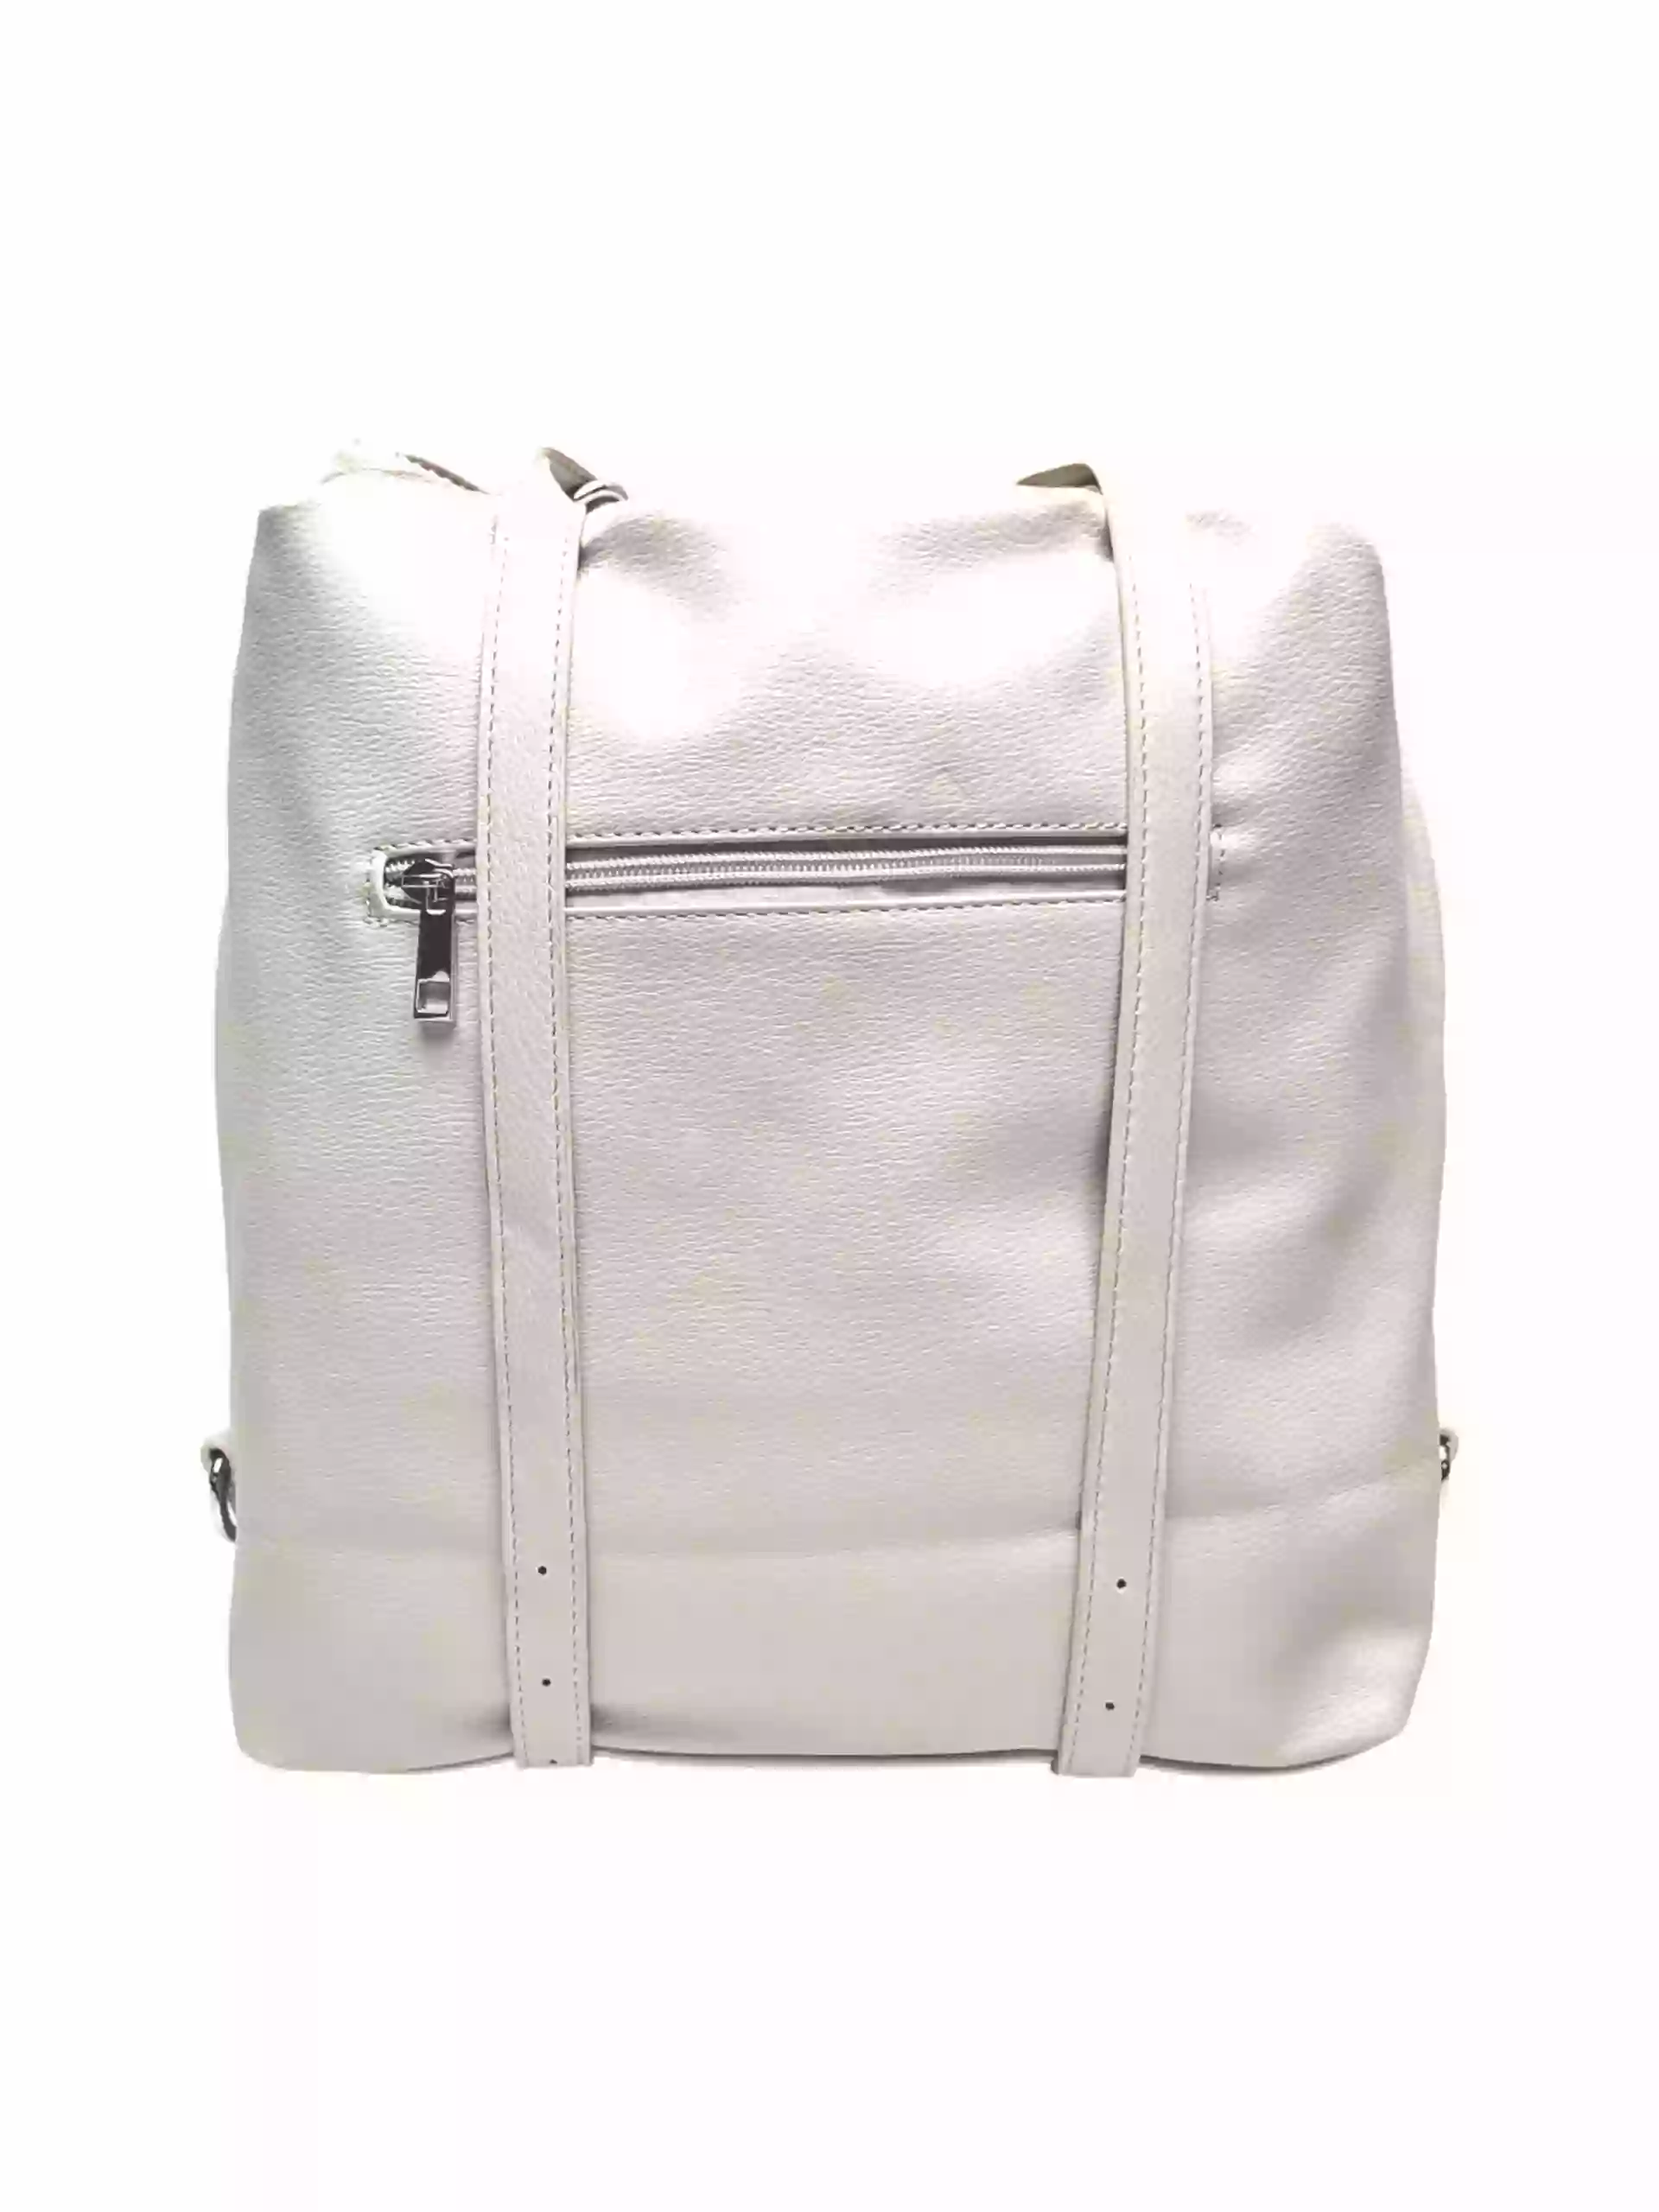 Velká perleťově bílá kabelka a batoh 2v1, Tapple, X366, zadní strana kabelko-batohu 2v1 s popruhy